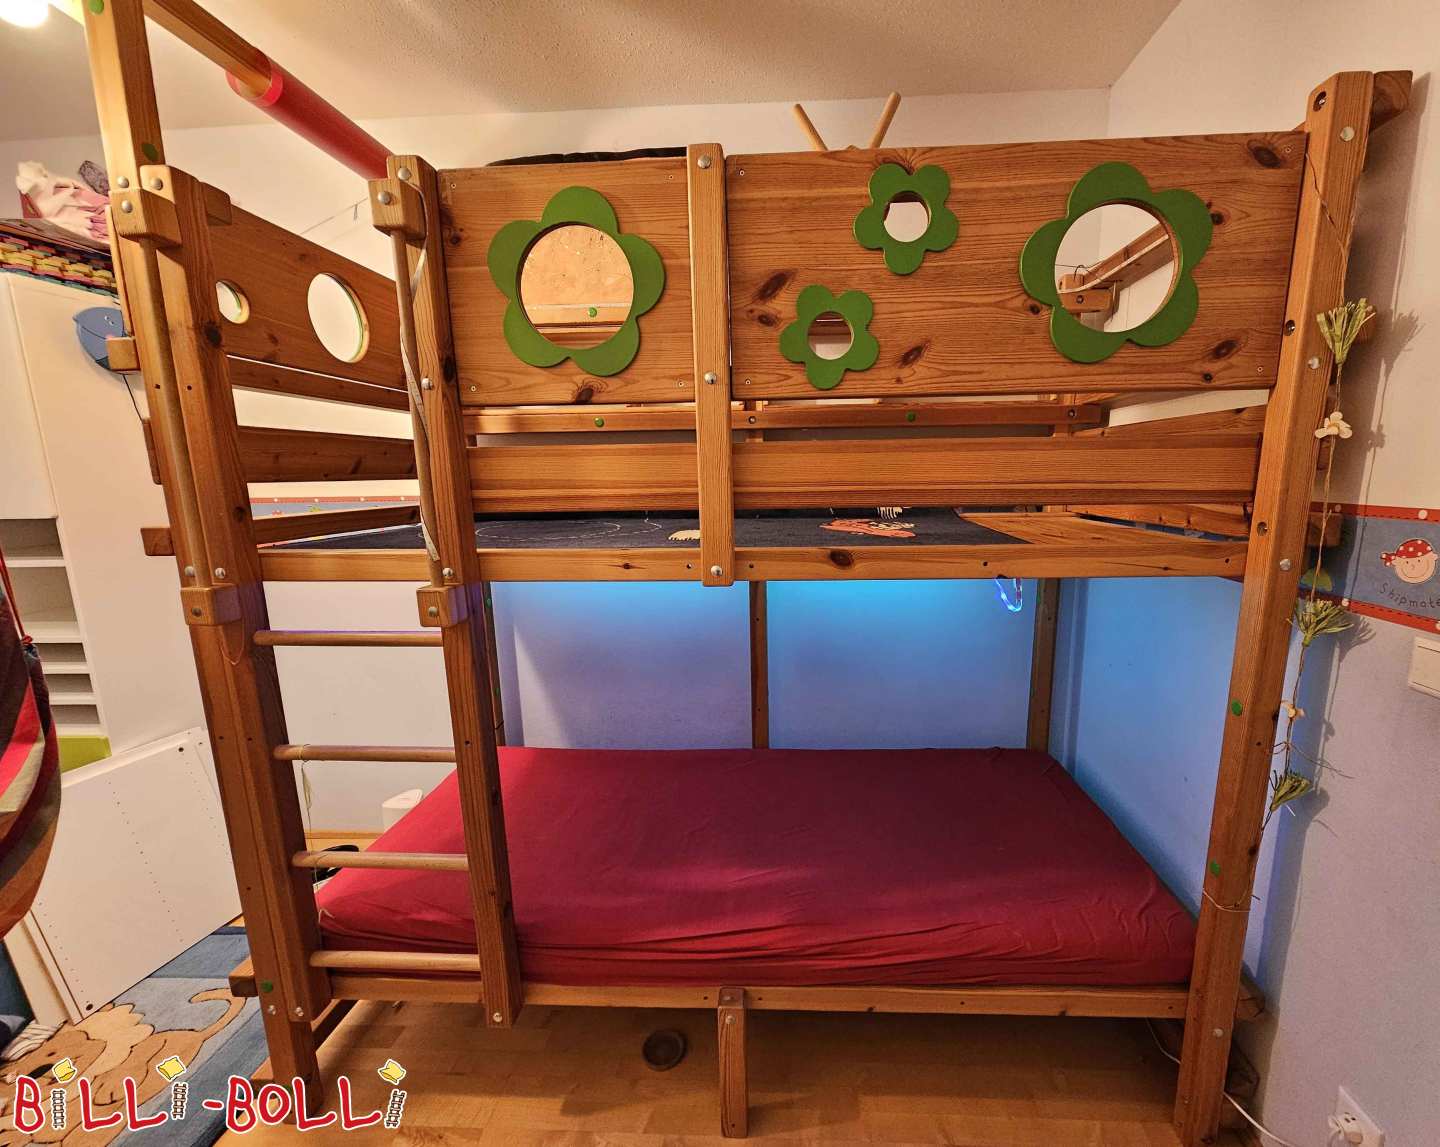 سرير علوي ينمو مع الطفل بألواح خضراء مزينة بالأزهار (الفئة: سرير علوي ينمو مع الطفل used)